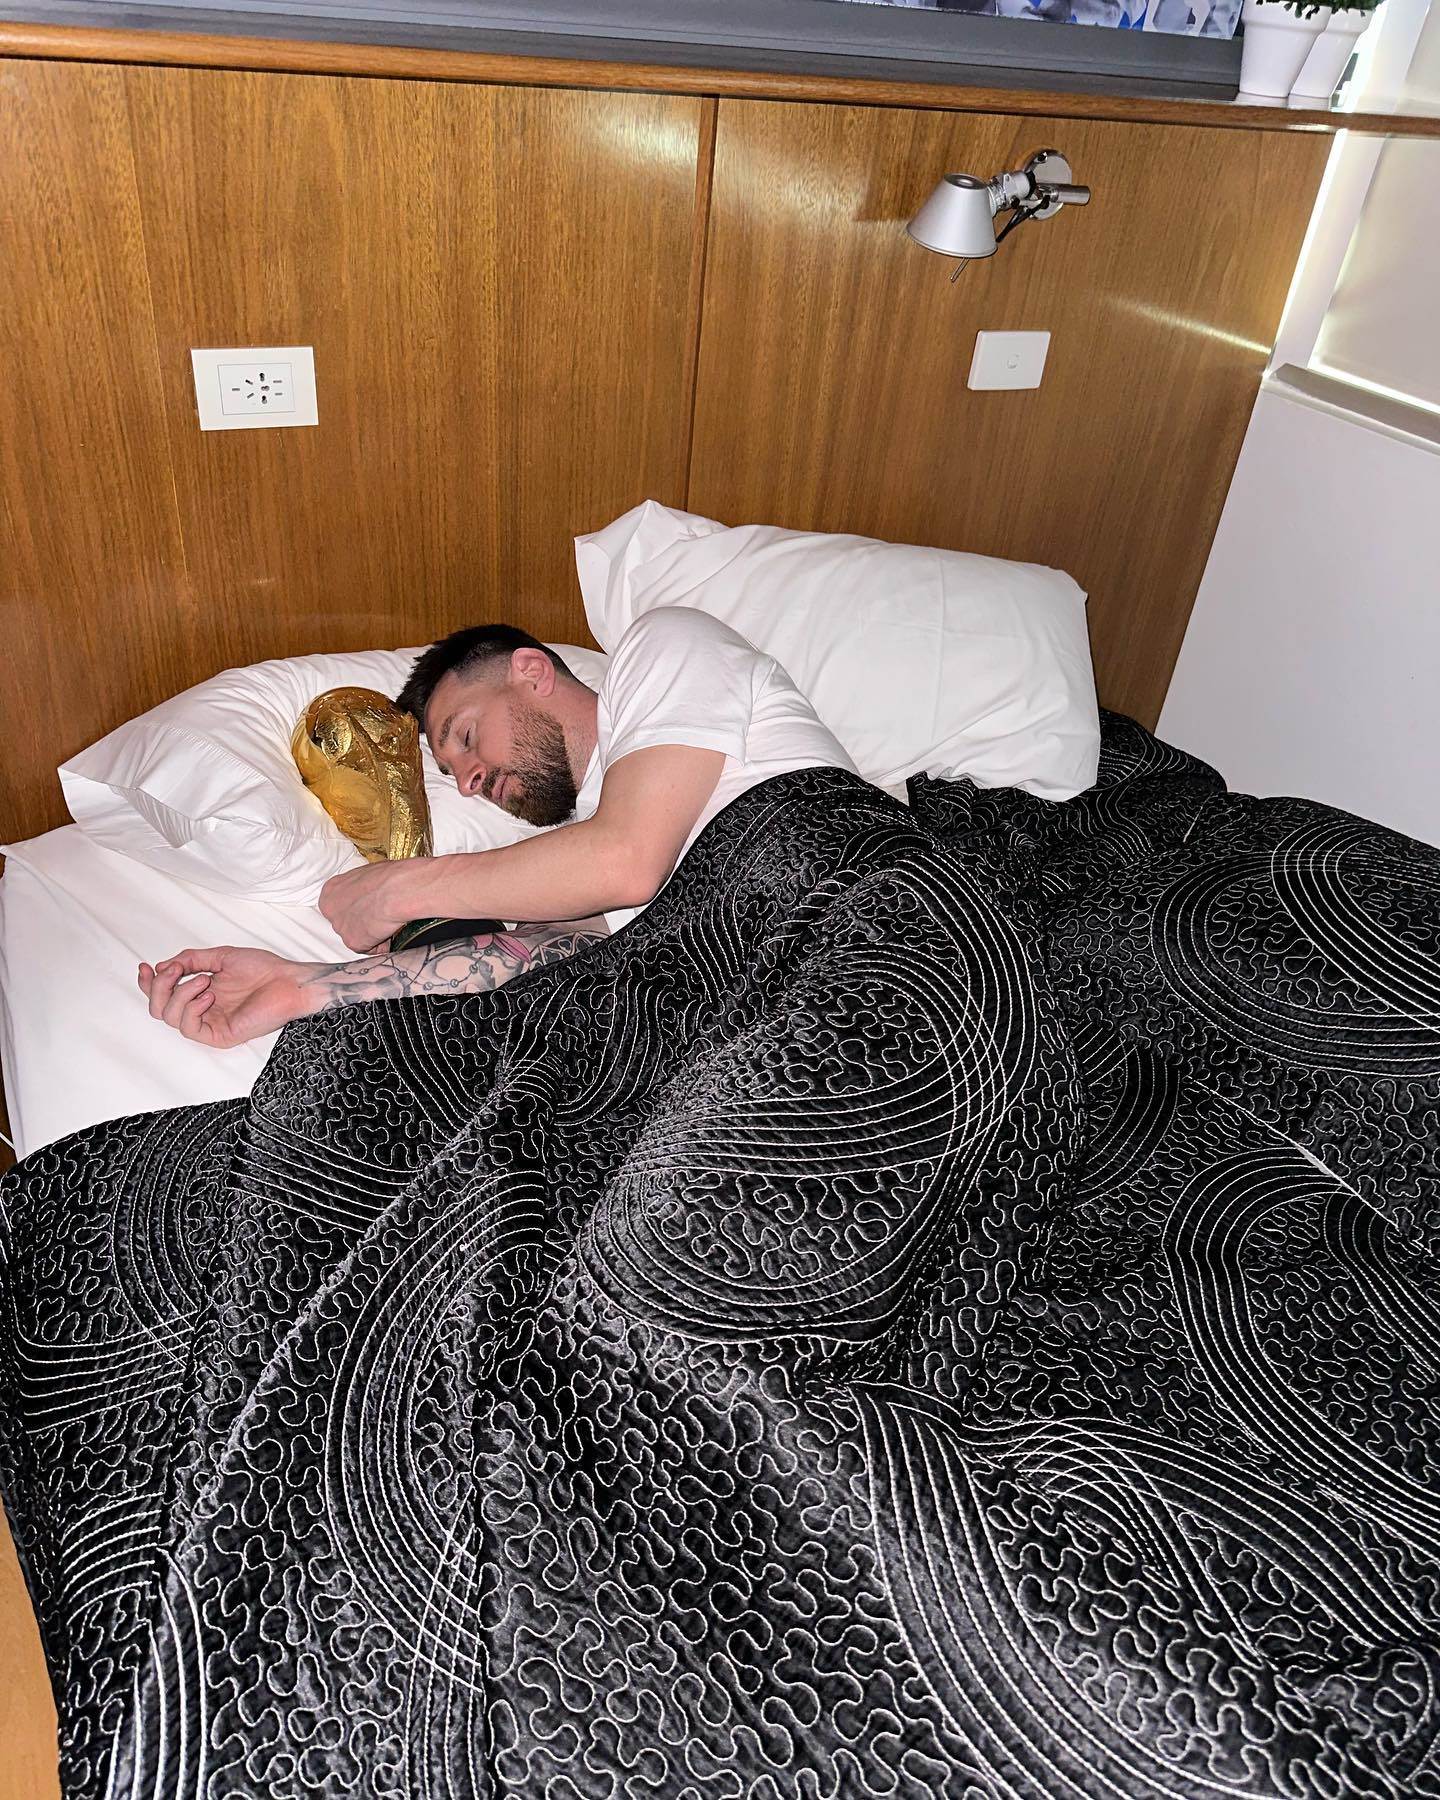  "ميسي" يحتضن كأس العالم على فراش النوم، ويبدو أنه نائمًا